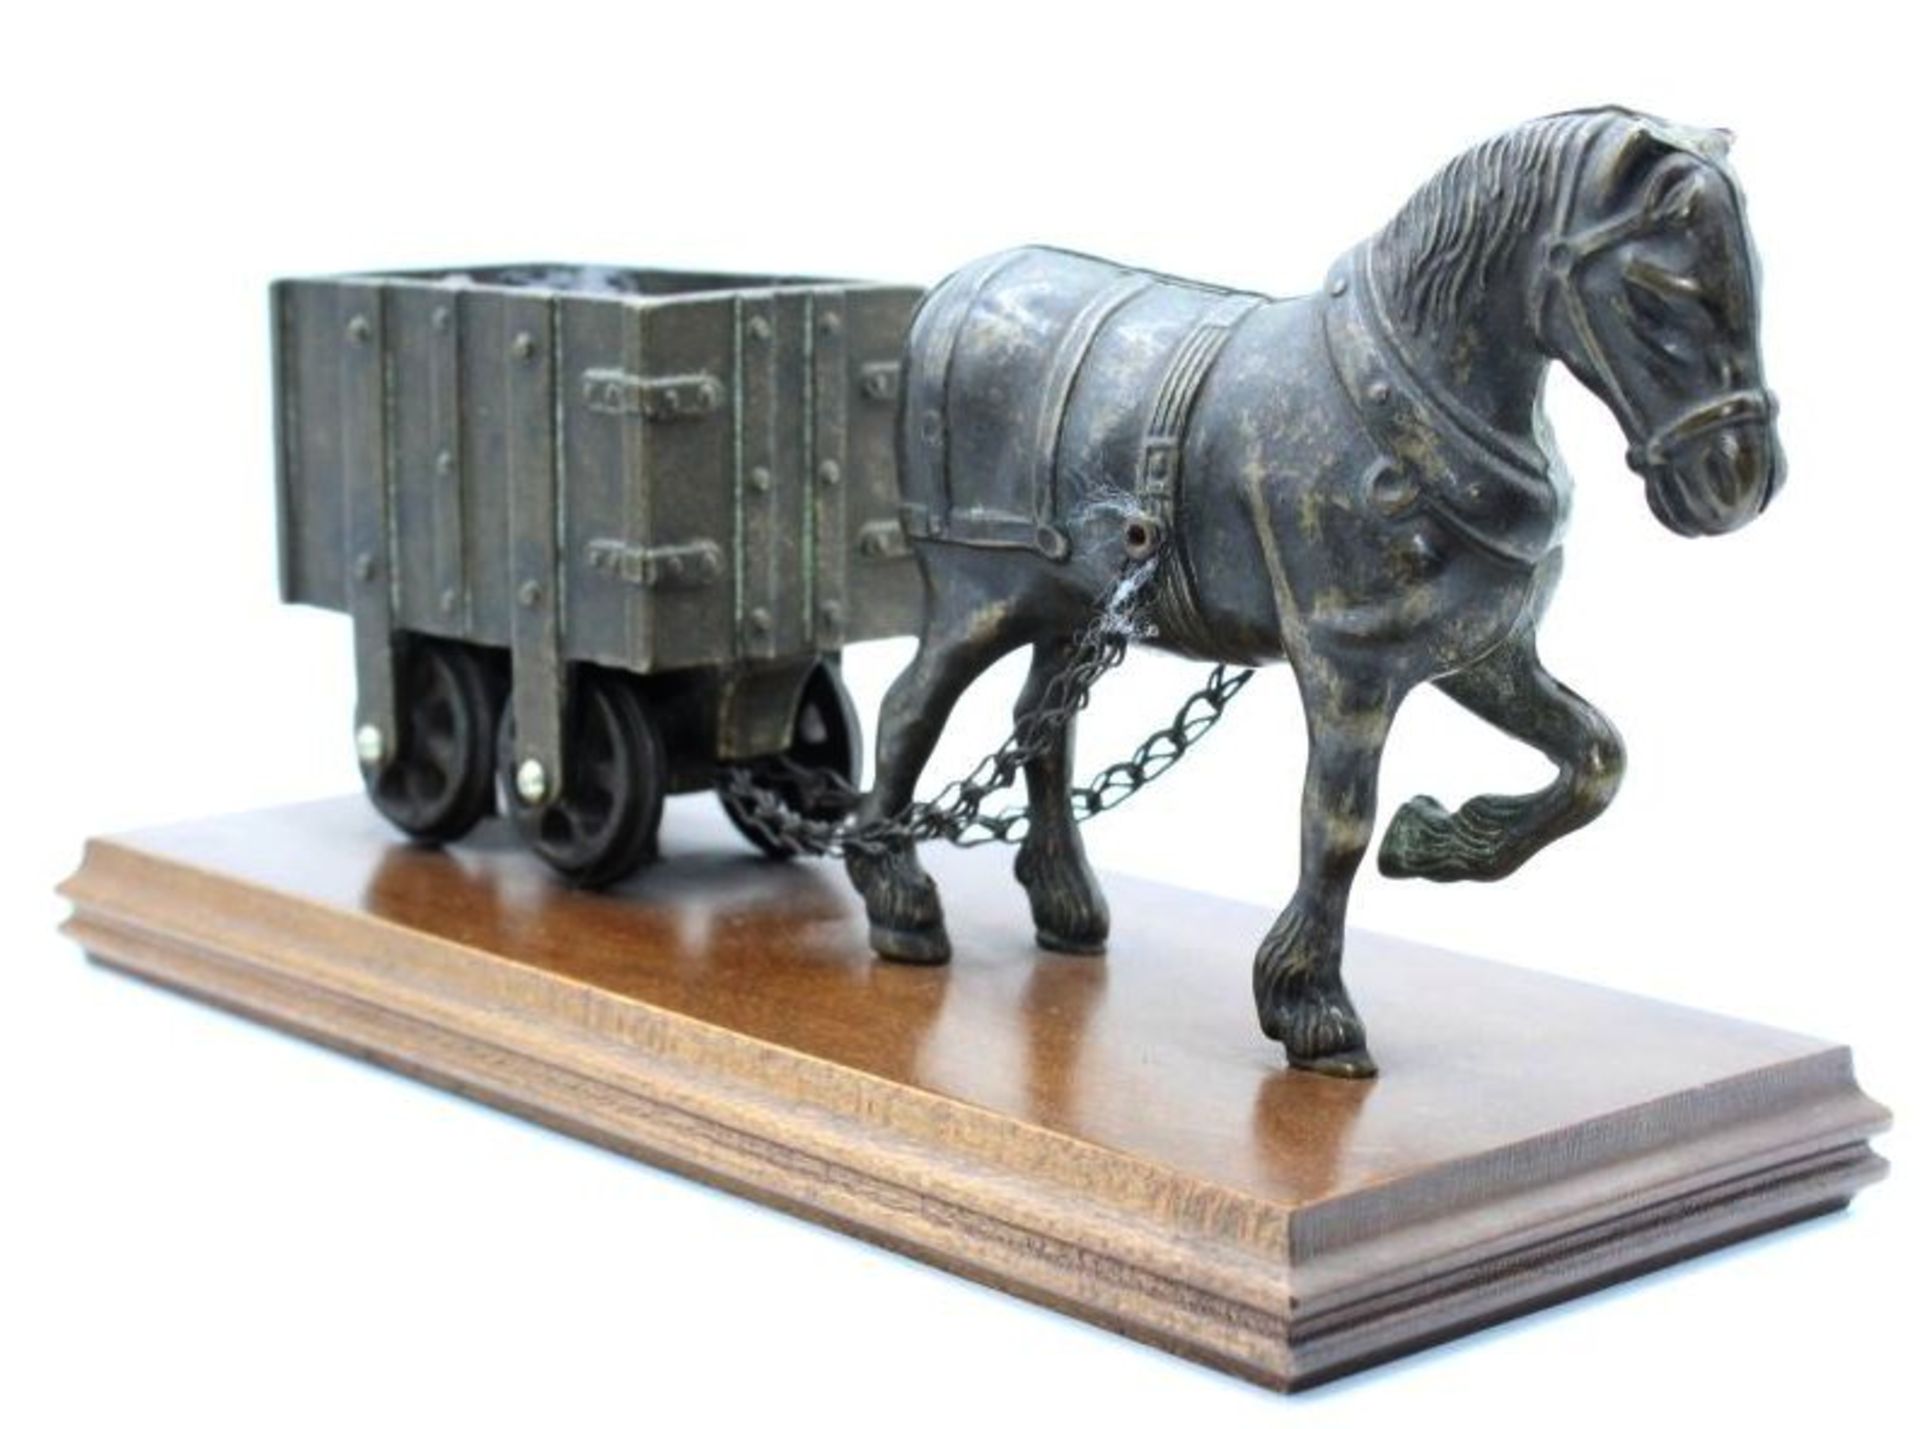 Pferd mit Lore auf Holz, Bronze, H-13cm L-25cm T-10,5cm. - Bild 2 aus 3